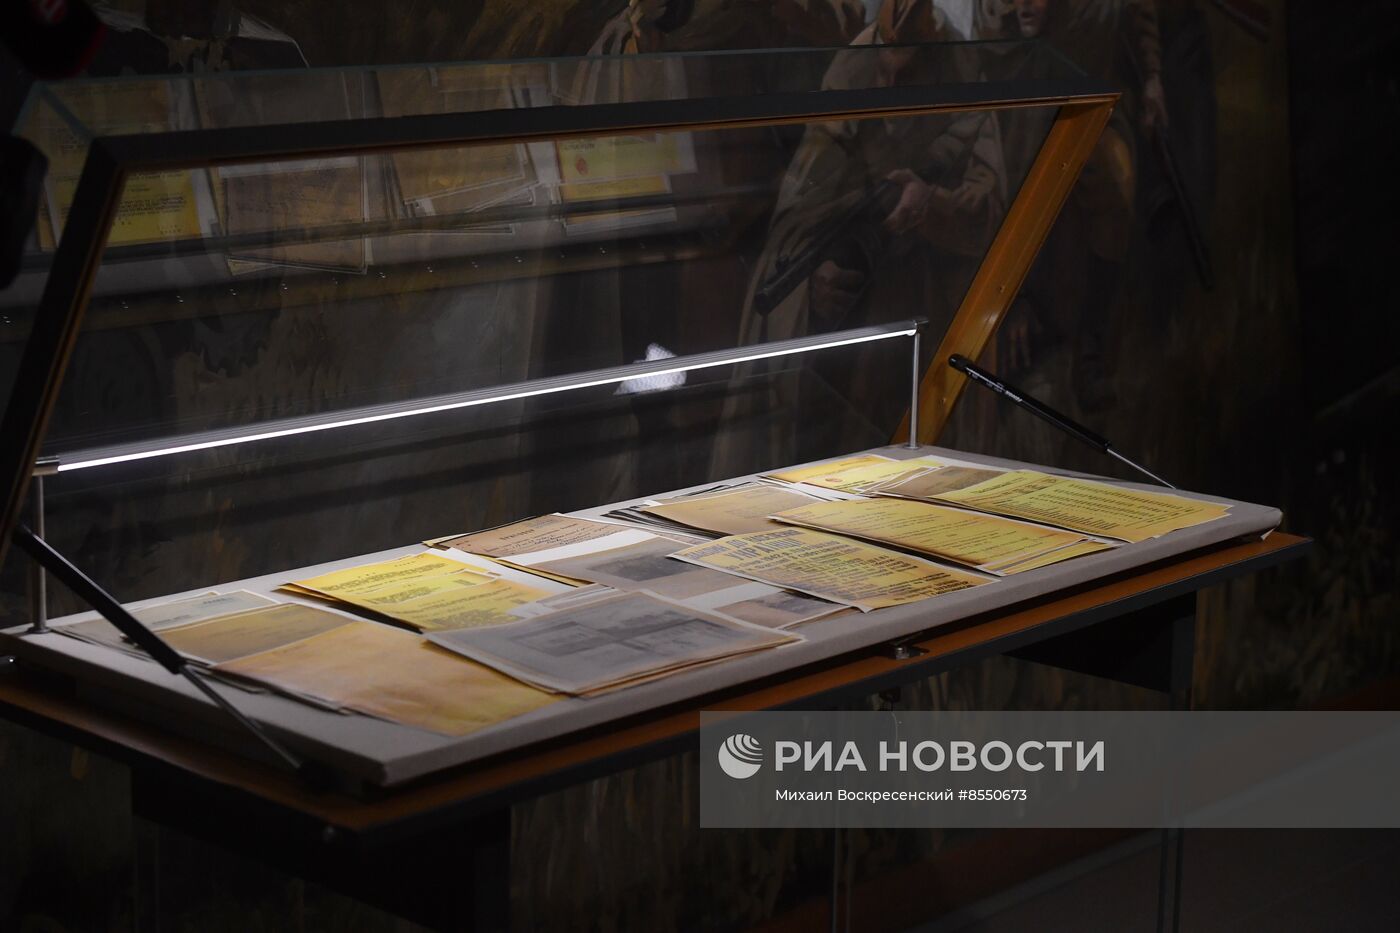 Представление рассекреченных архивных  документов о зверствах нацистов и их пособников в Киеве и Киевской области в годы оккупации